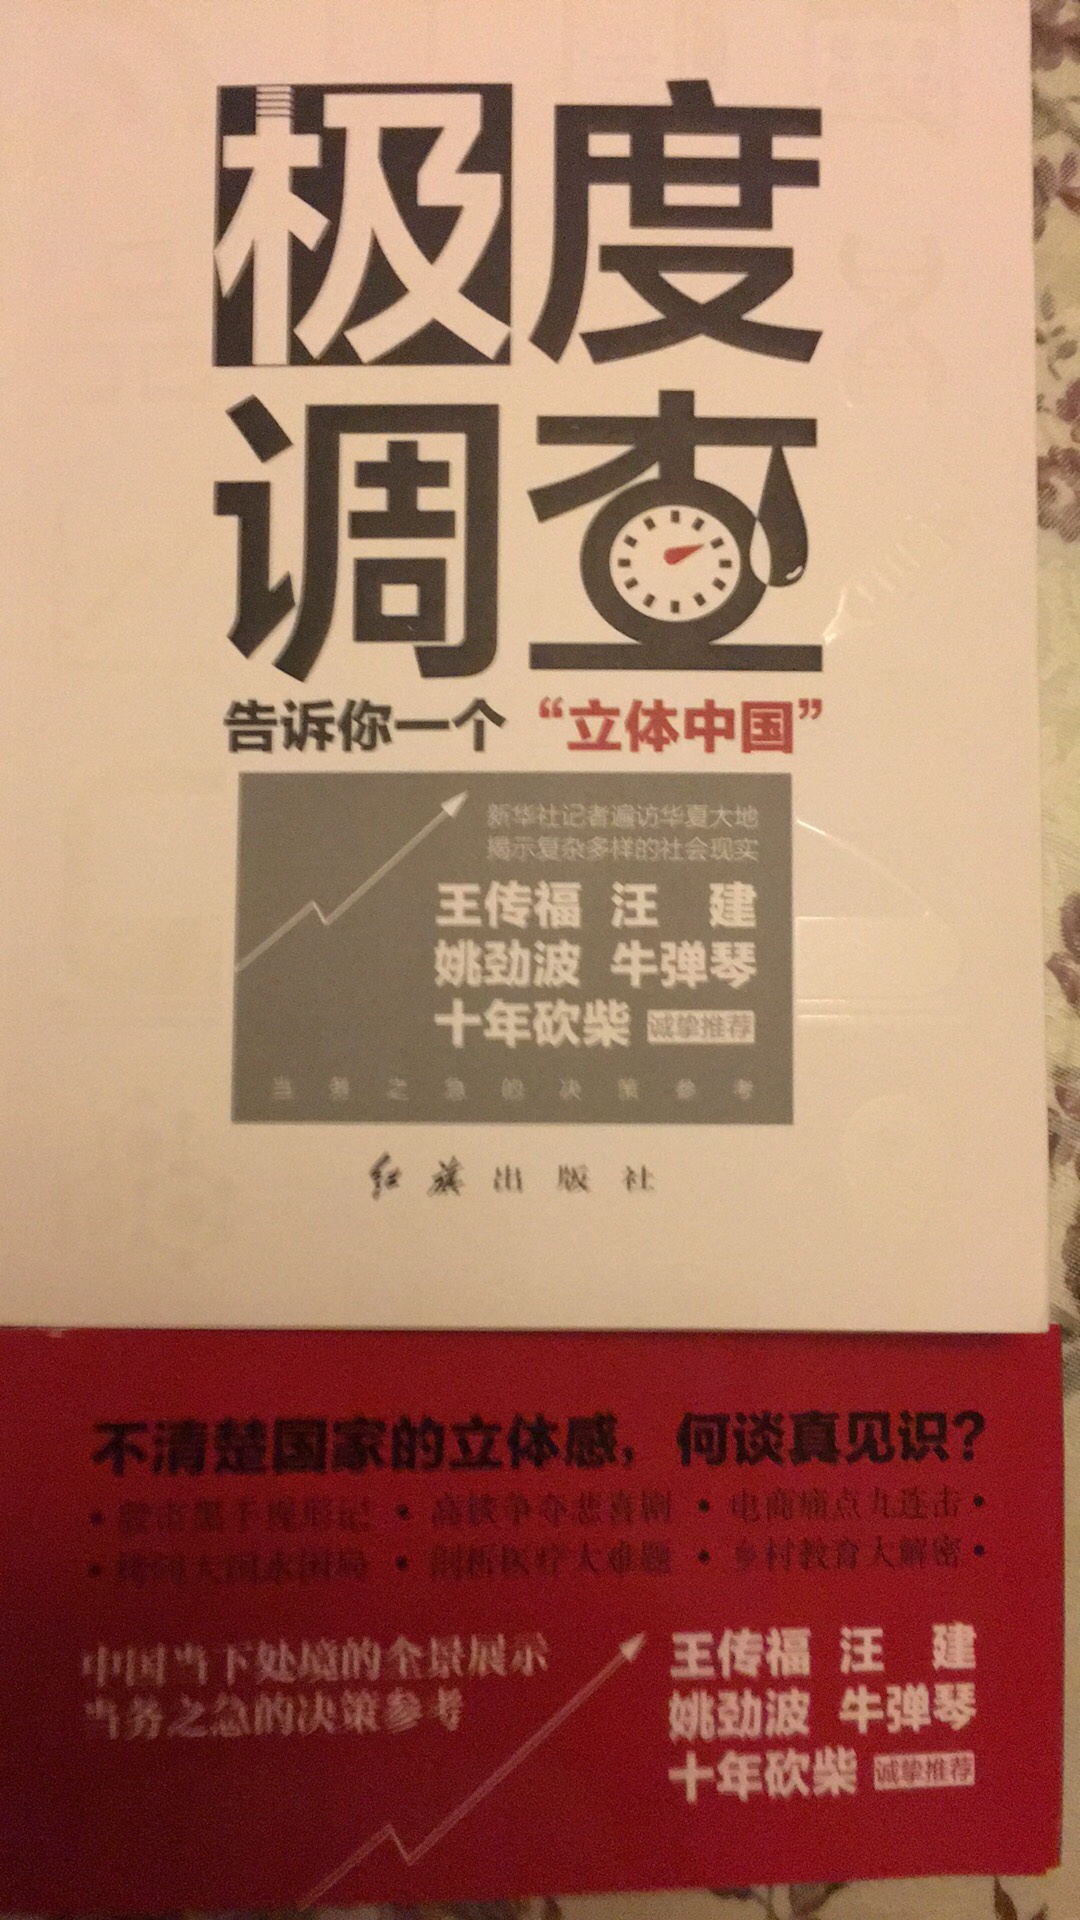 这本书深刻全面告诉我们一个真实的当今中国。